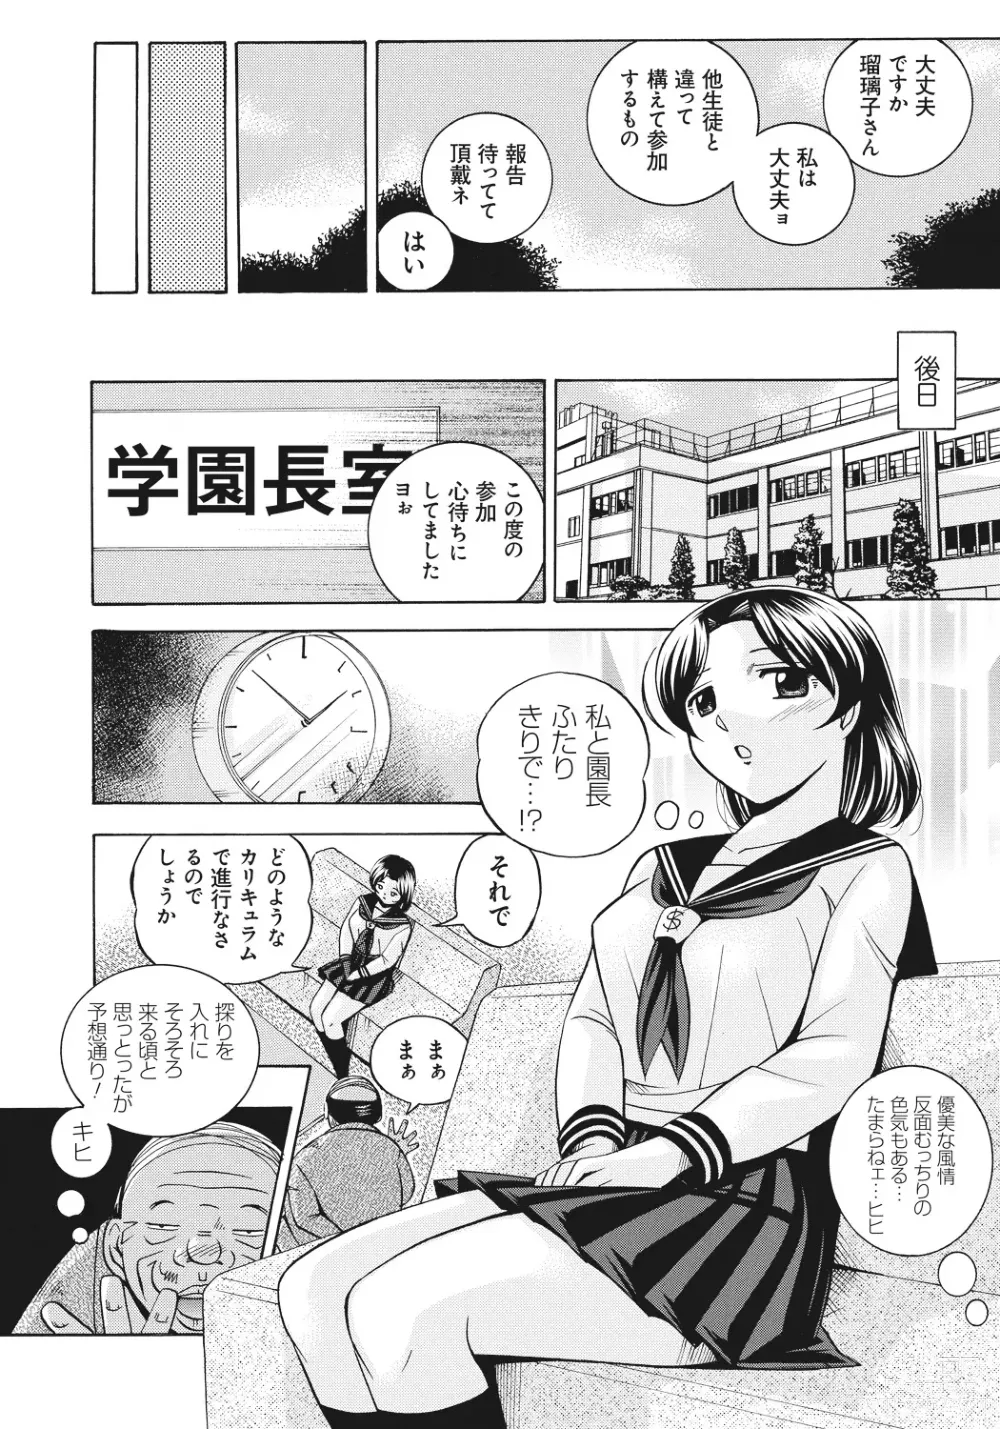 Page 13 of manga Student Council President Mitsuki